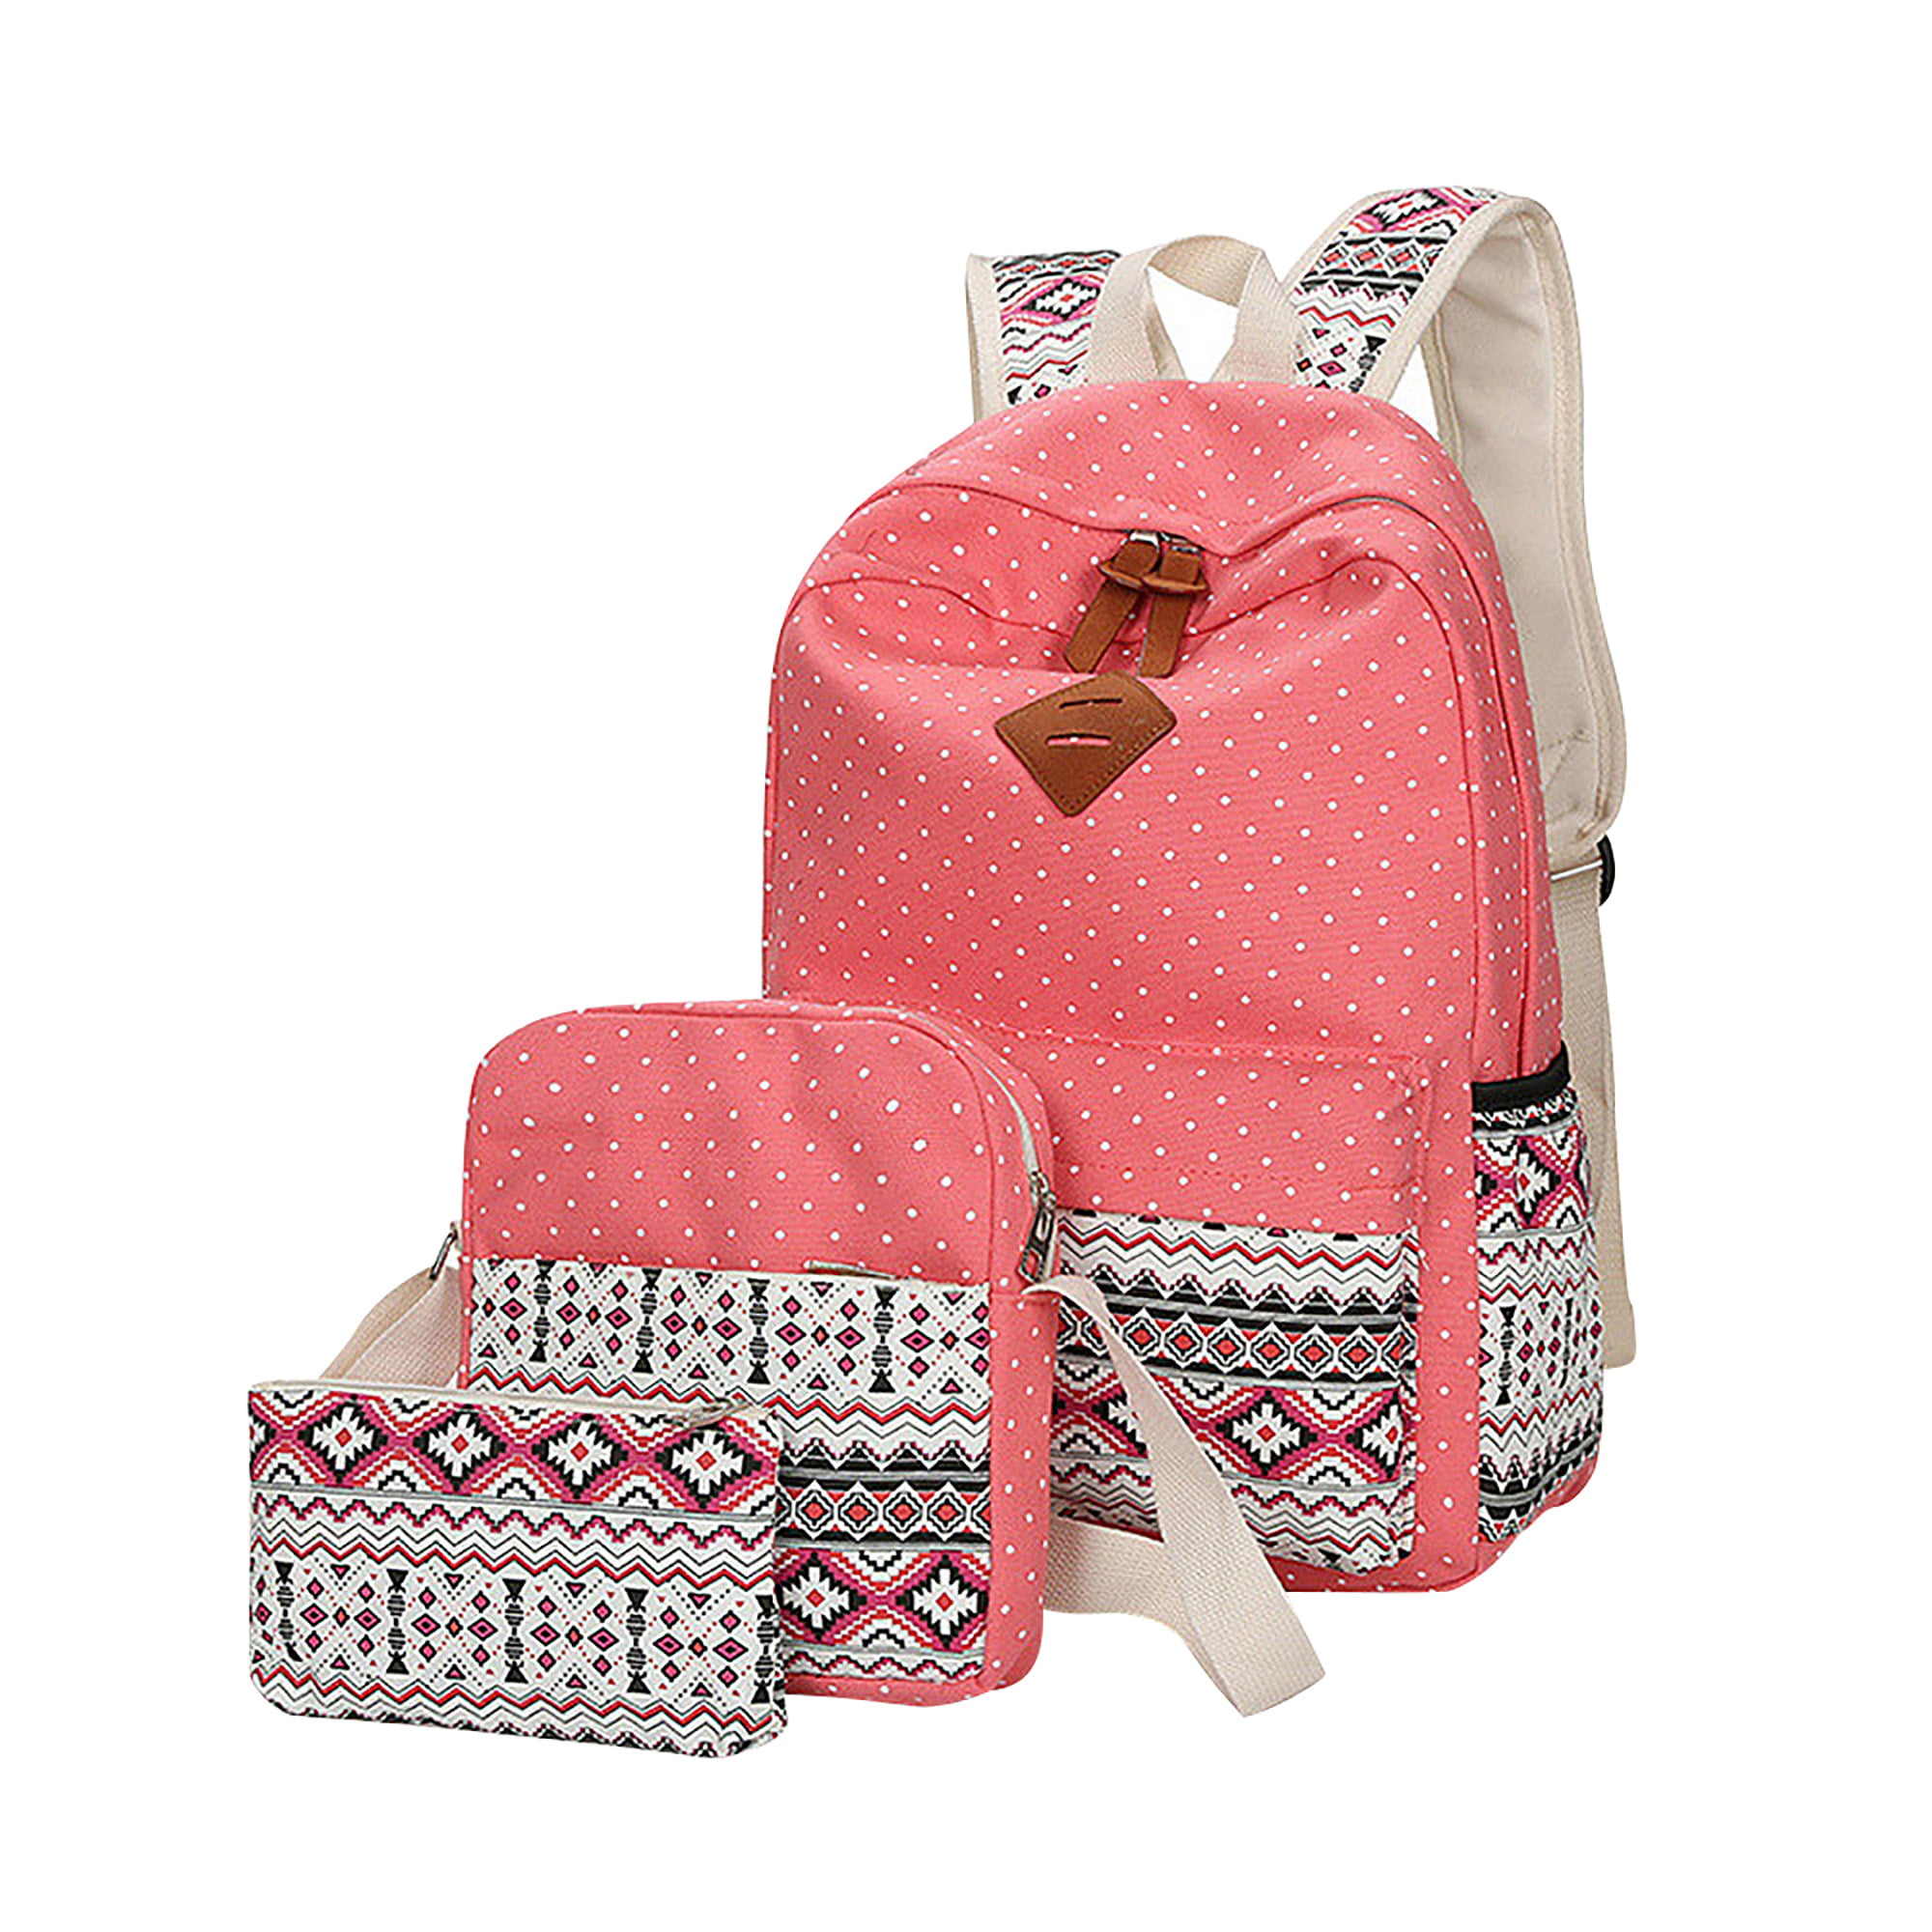 Girls Backpack Set 3 in1 School Backpack for Girls Elementary Kids Bookbag 